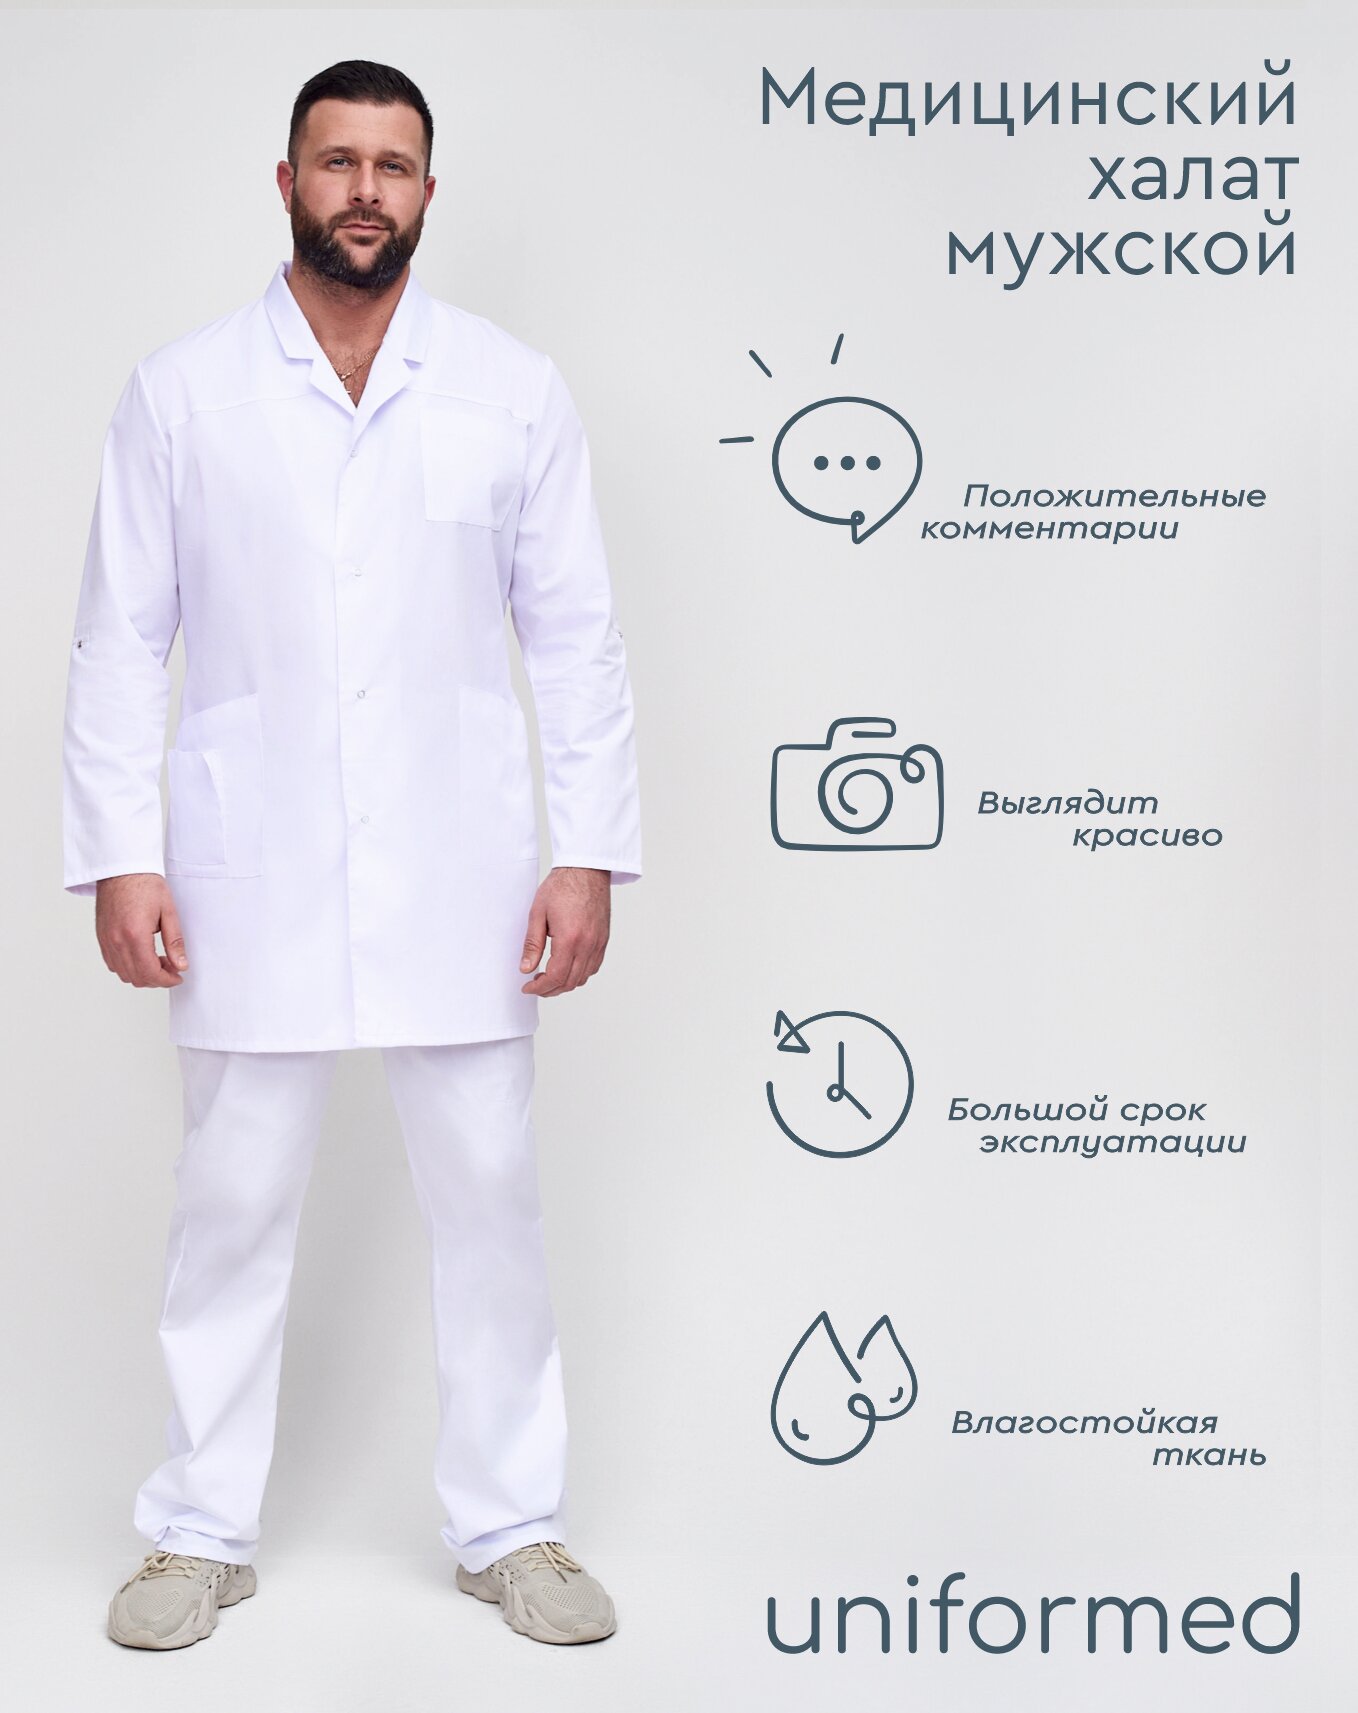 Медицинский мужской халат 129.3.1 Uniformed, ткань сатори, укороченный, рукав длинный, на кнопках, цвет белый, размер 44